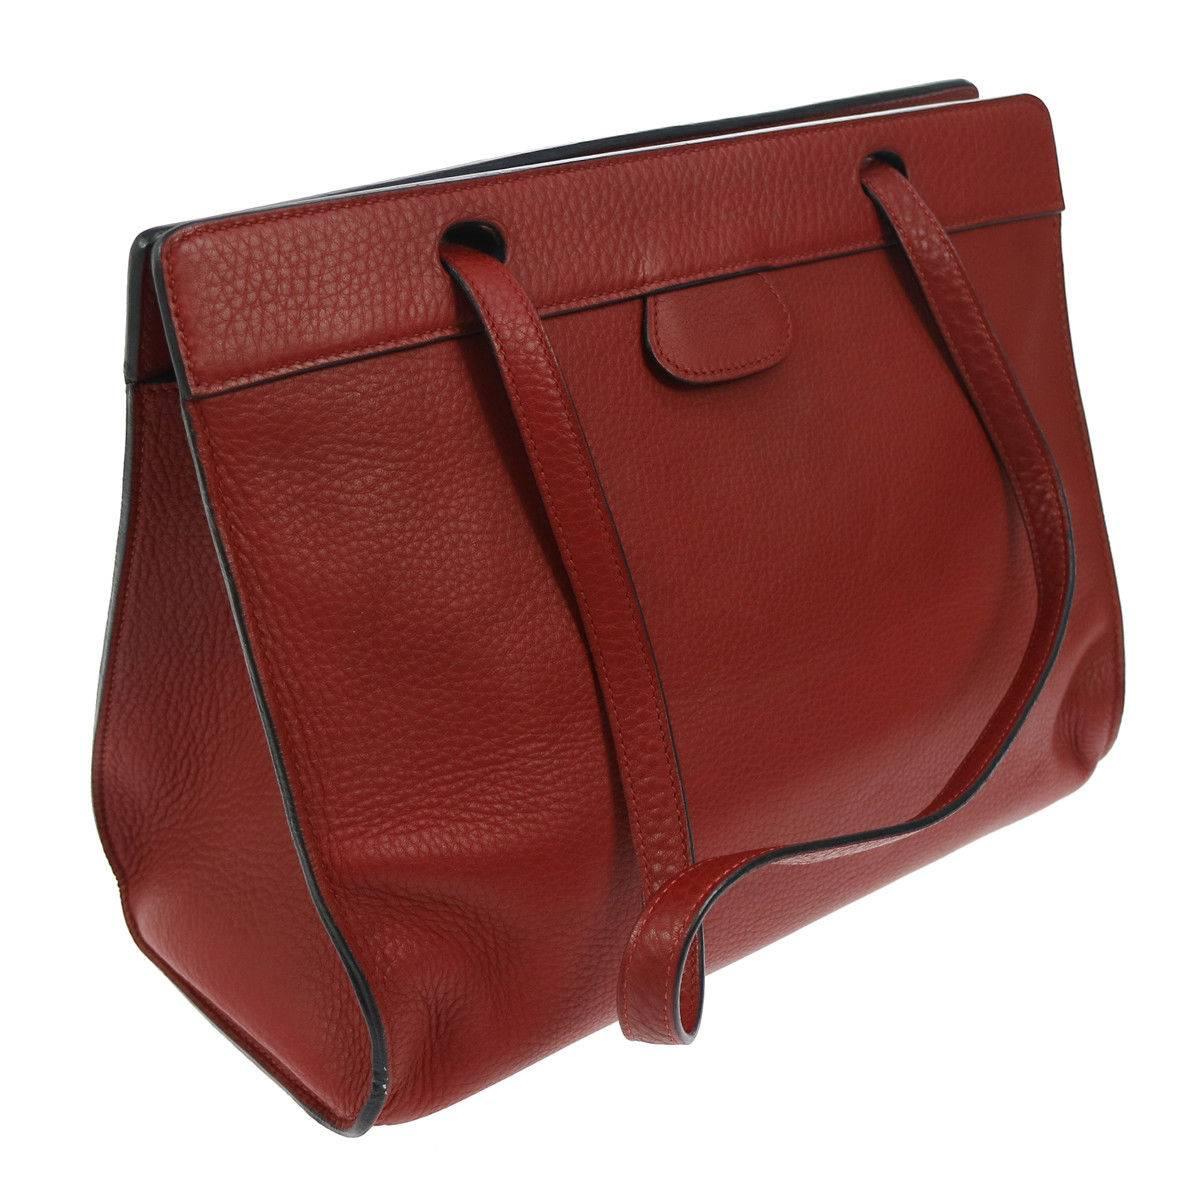 Hermes Rouge Leather Men's Women's Carryall Travel Shopper Tote Shoulder Bag

Leather
Palladium tone hardware
Made in France
Shoulder strap drop 11